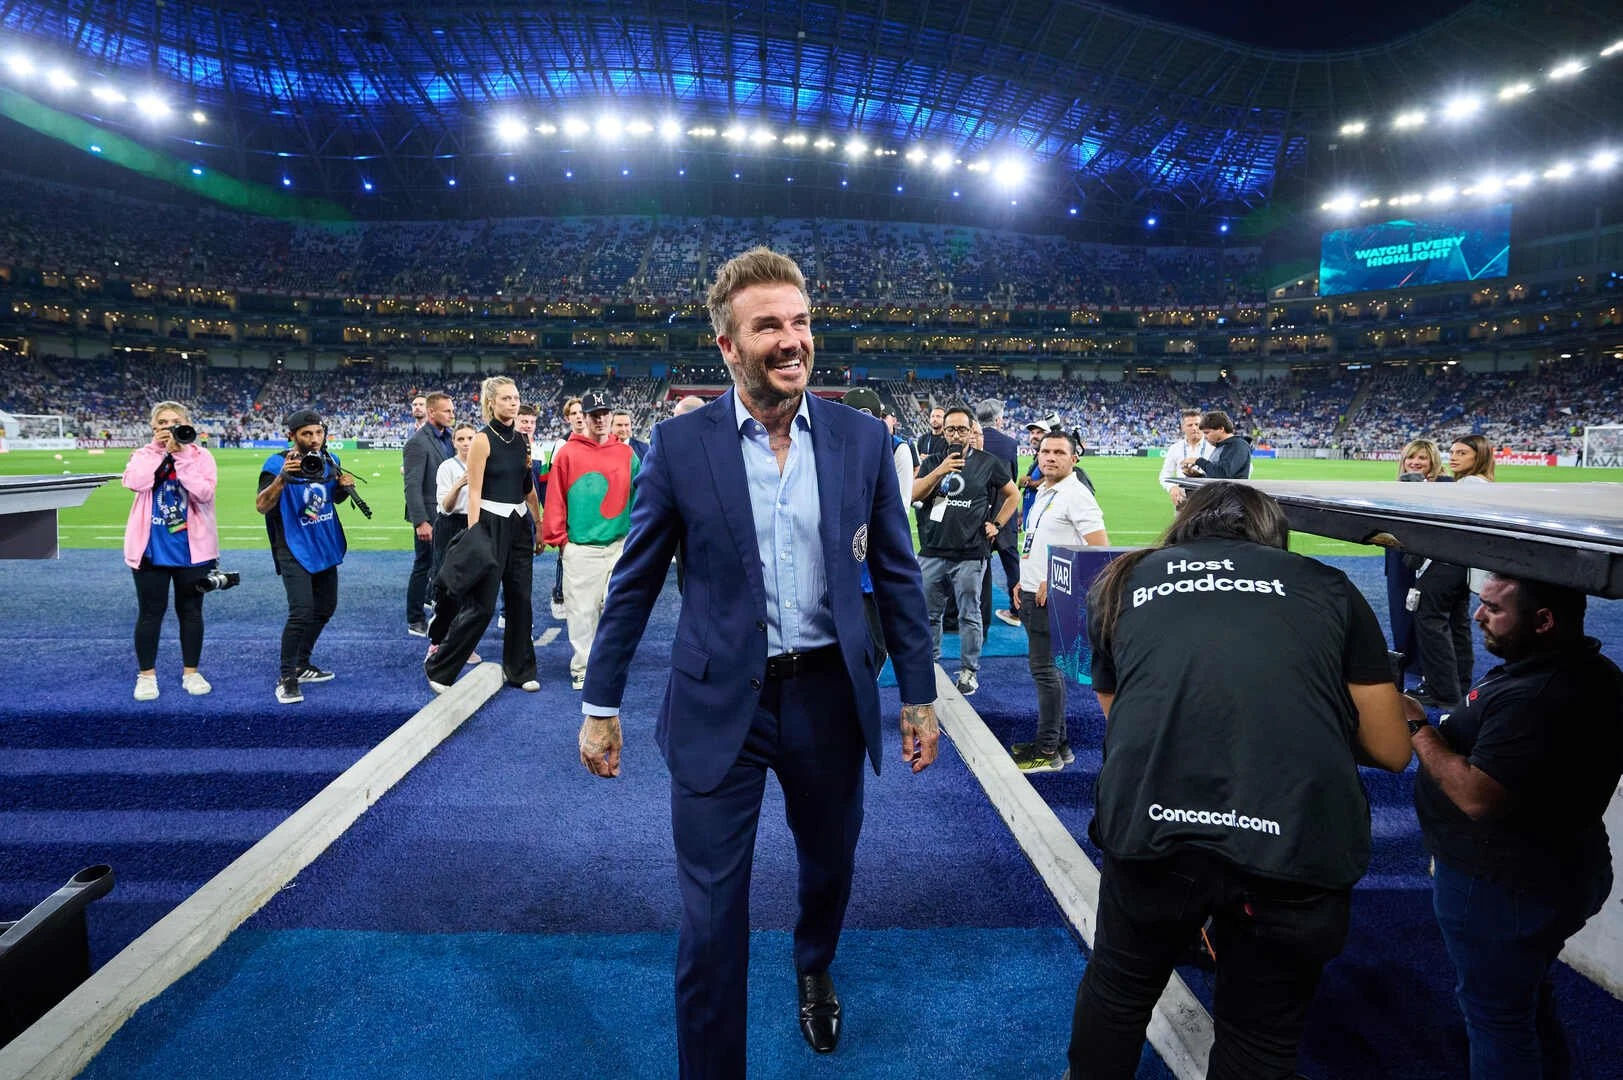 Ông chủ Inter Miami, David Beckham gây sốt ở Mexico